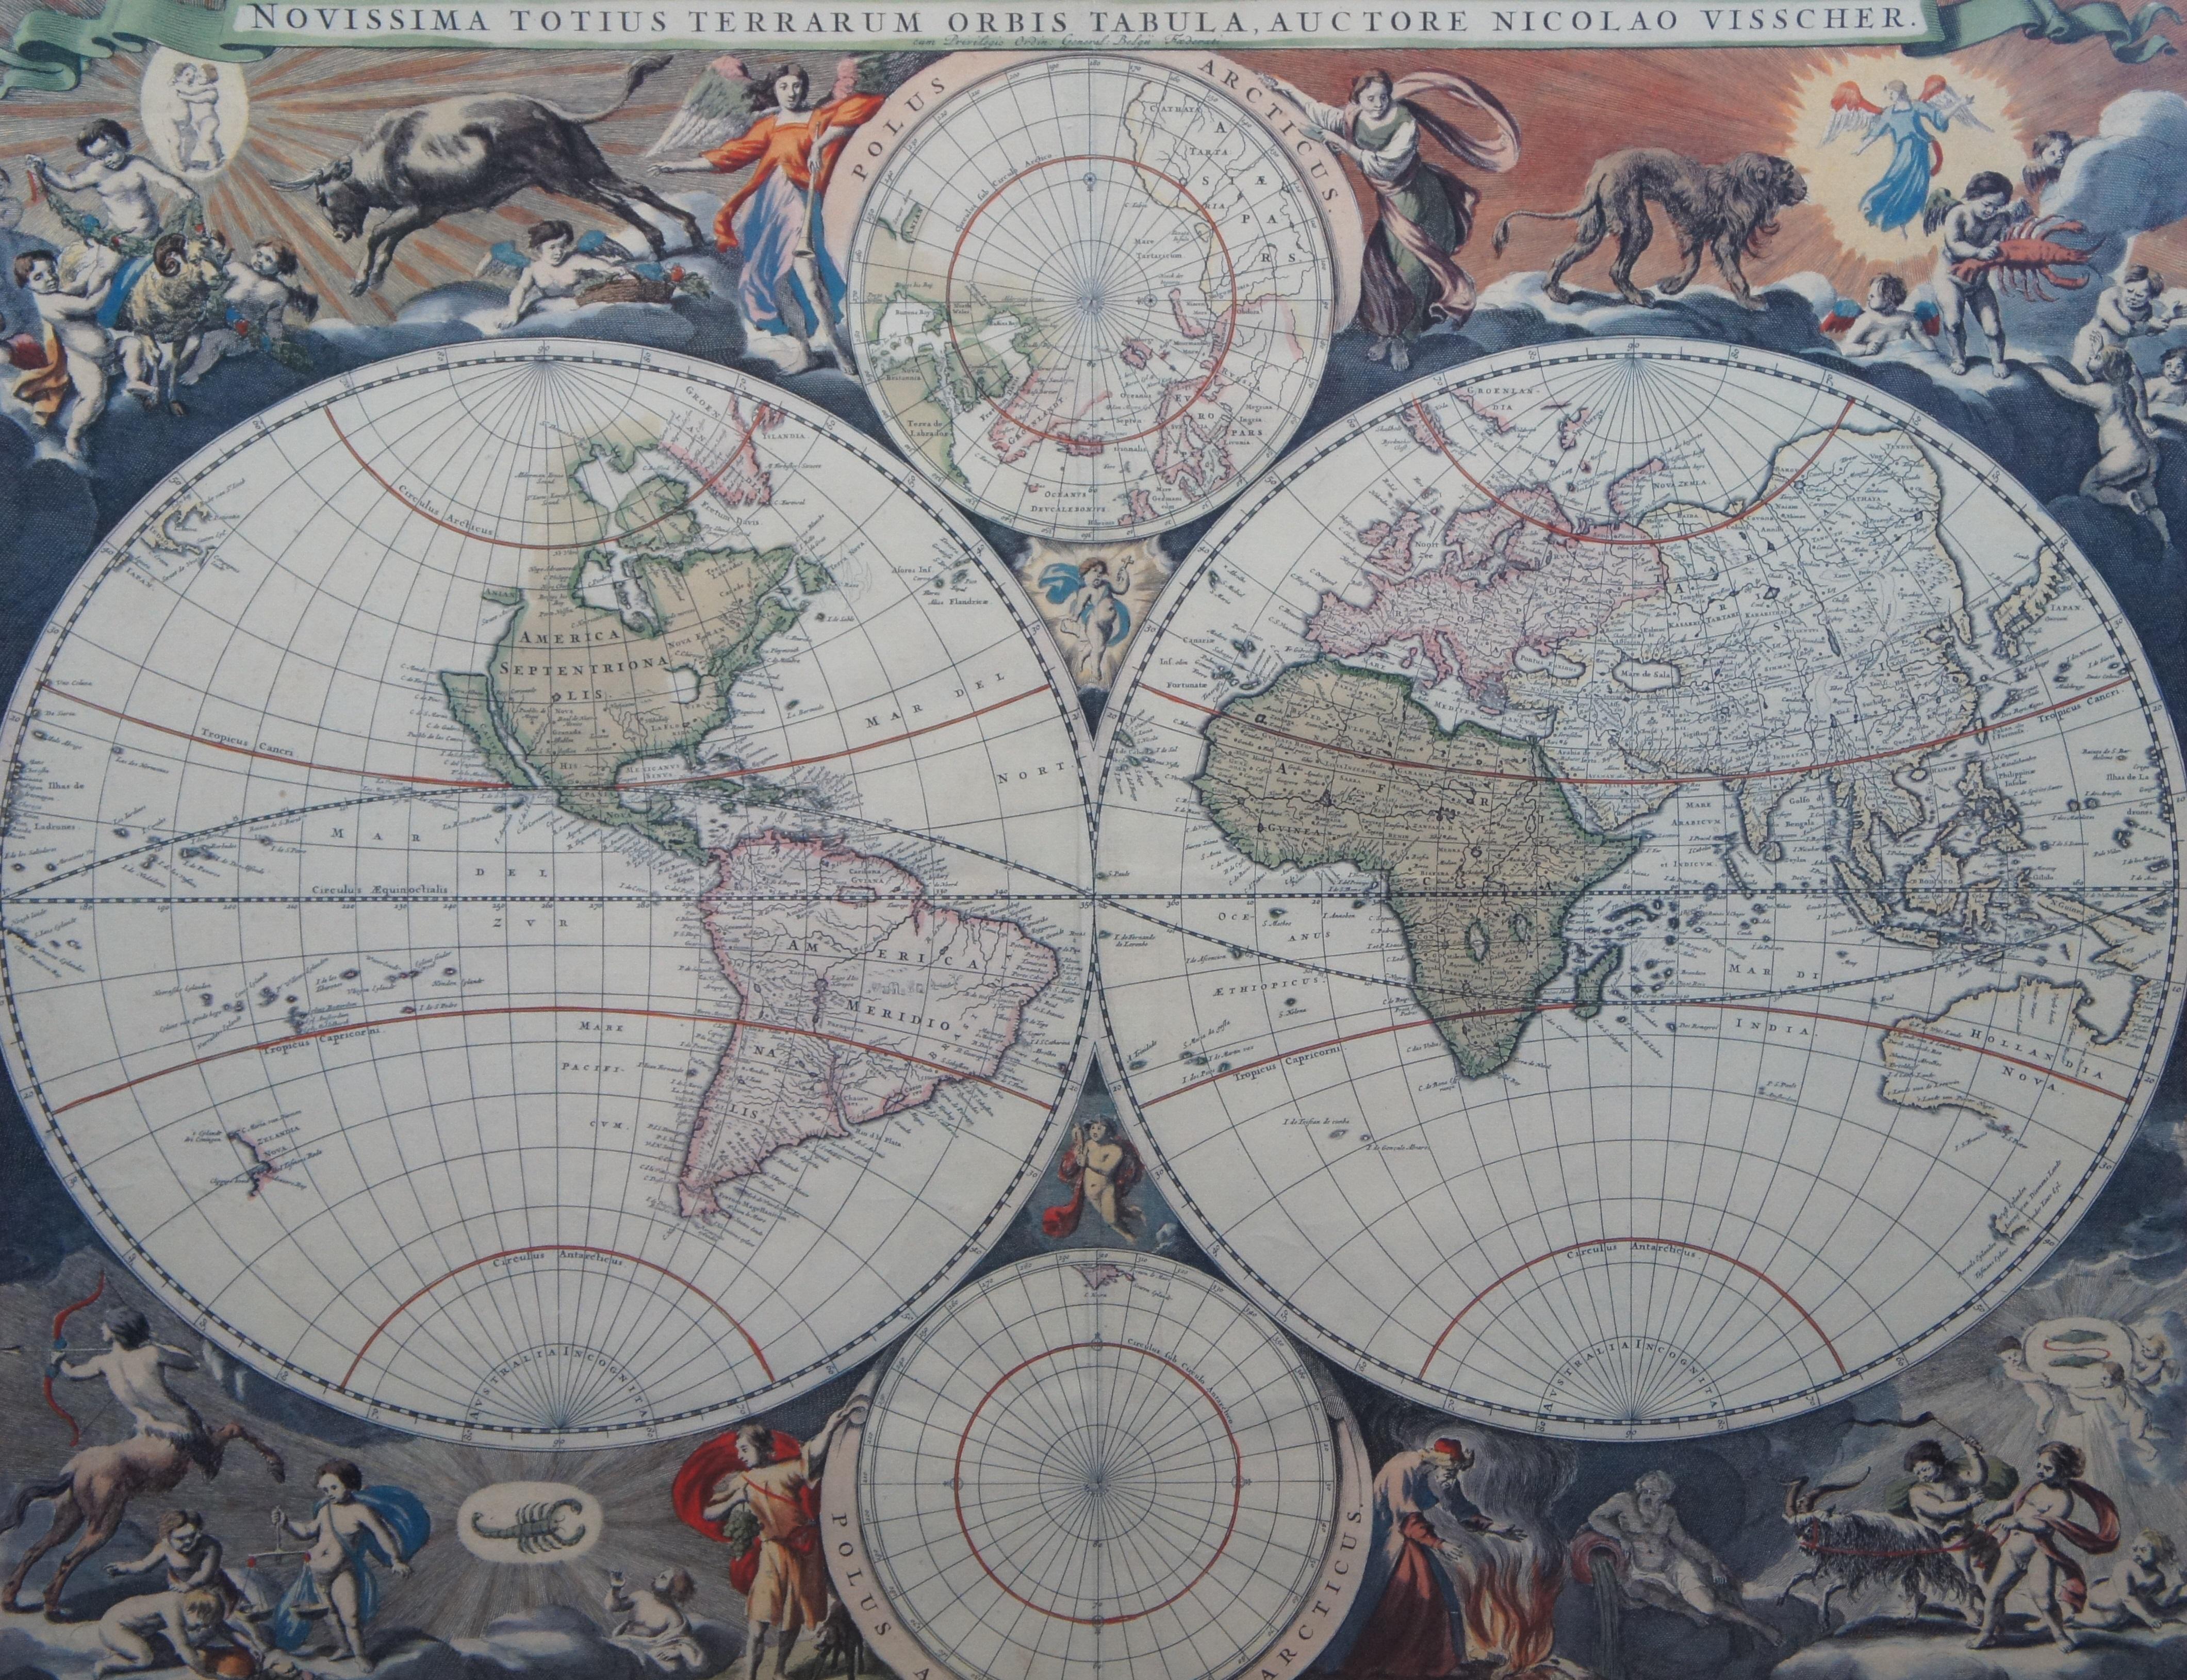 20th Century Novissima Totius Terrarum Orbis Tabula Map After Nicolaes Visscher Burled Frame For Sale